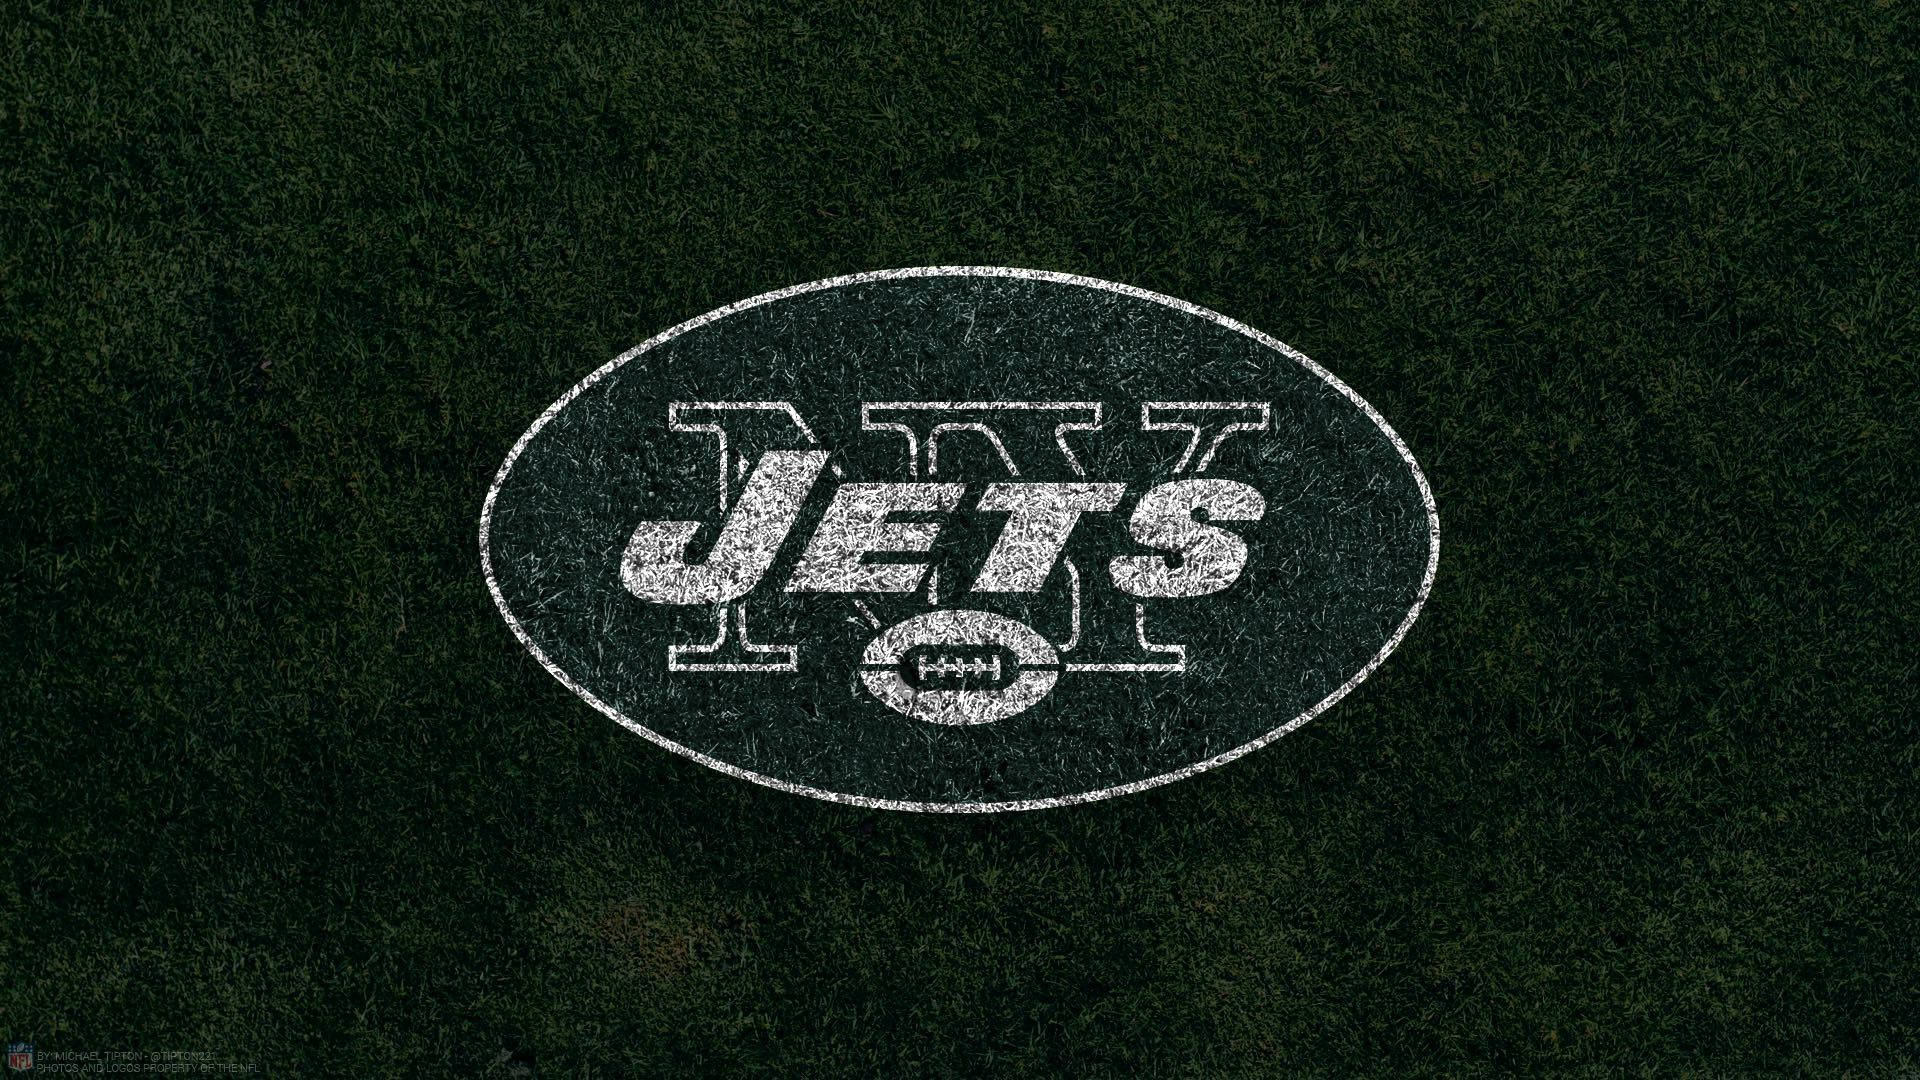 Ny Jets 1920 X 1080 Wallpaper